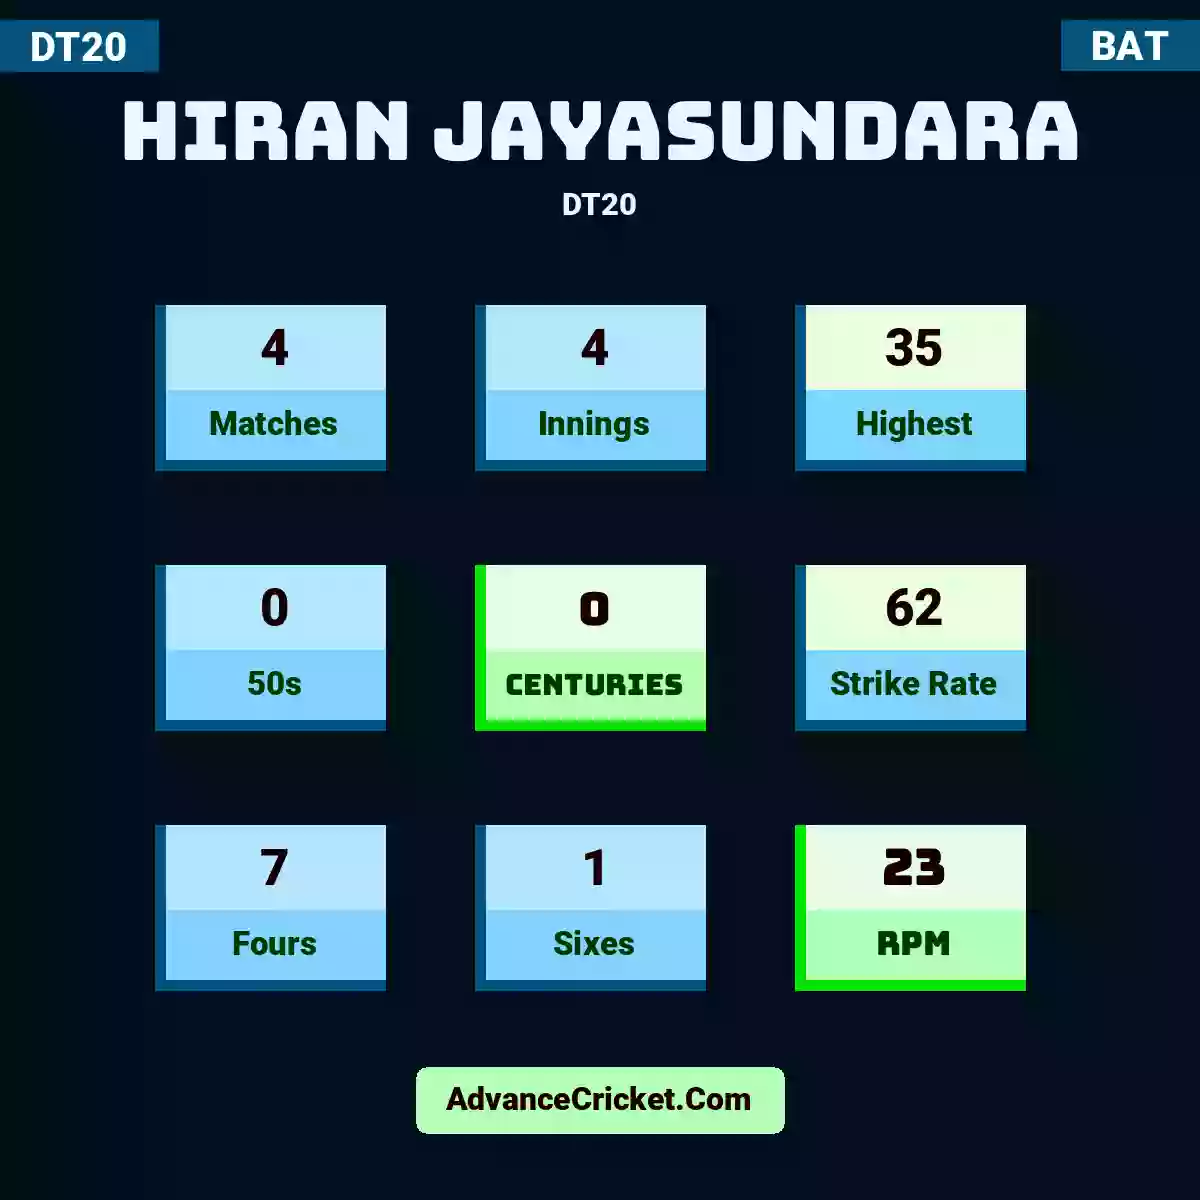 Hiran Jayasundara DT20 , Hiran Jayasundara played 4 matches, scored 35 runs as highest, 0 half-centuries, and 0 centuries, with a strike rate of 62. H.Jayasundara hit 7 fours and 1 sixes, with an RPM of 23.